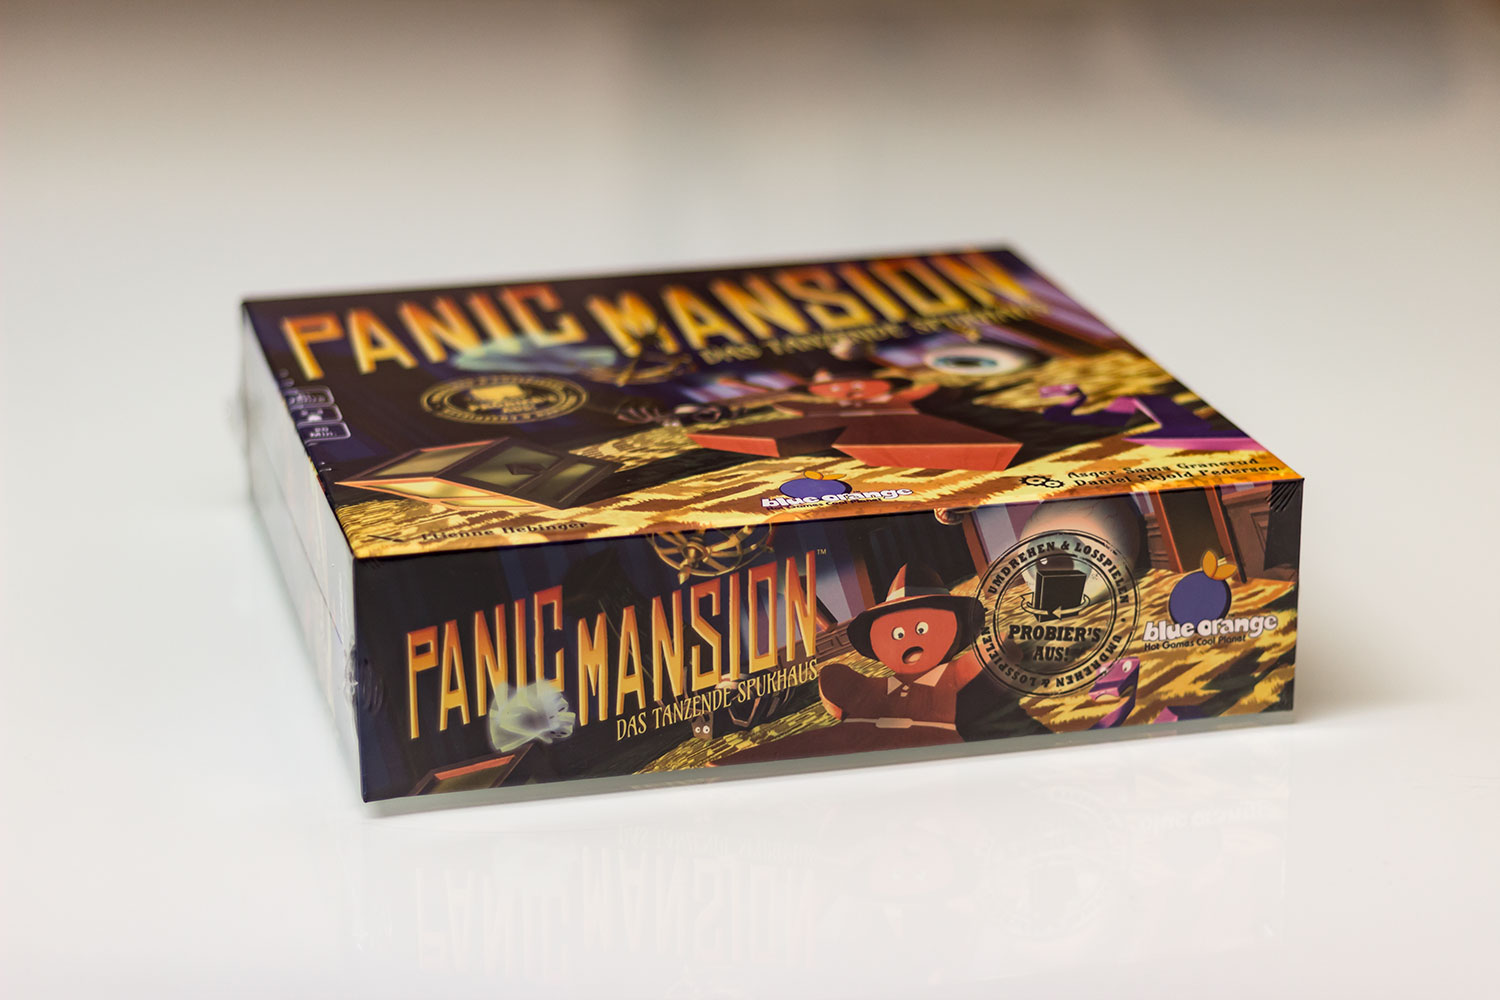 "Panic Mansion" ist im Handel angekommen. Ab sofort ist es dort zum Kaufen verfügbar. “Panic Mansion” spielt sich in kurzen 10-20 Minuten mit 2-4 Spielern. Die autoren Asger Harding Granerud & Daniel Skjold Pedersen legen vor allem auf kurzweiligen Spaß wert.